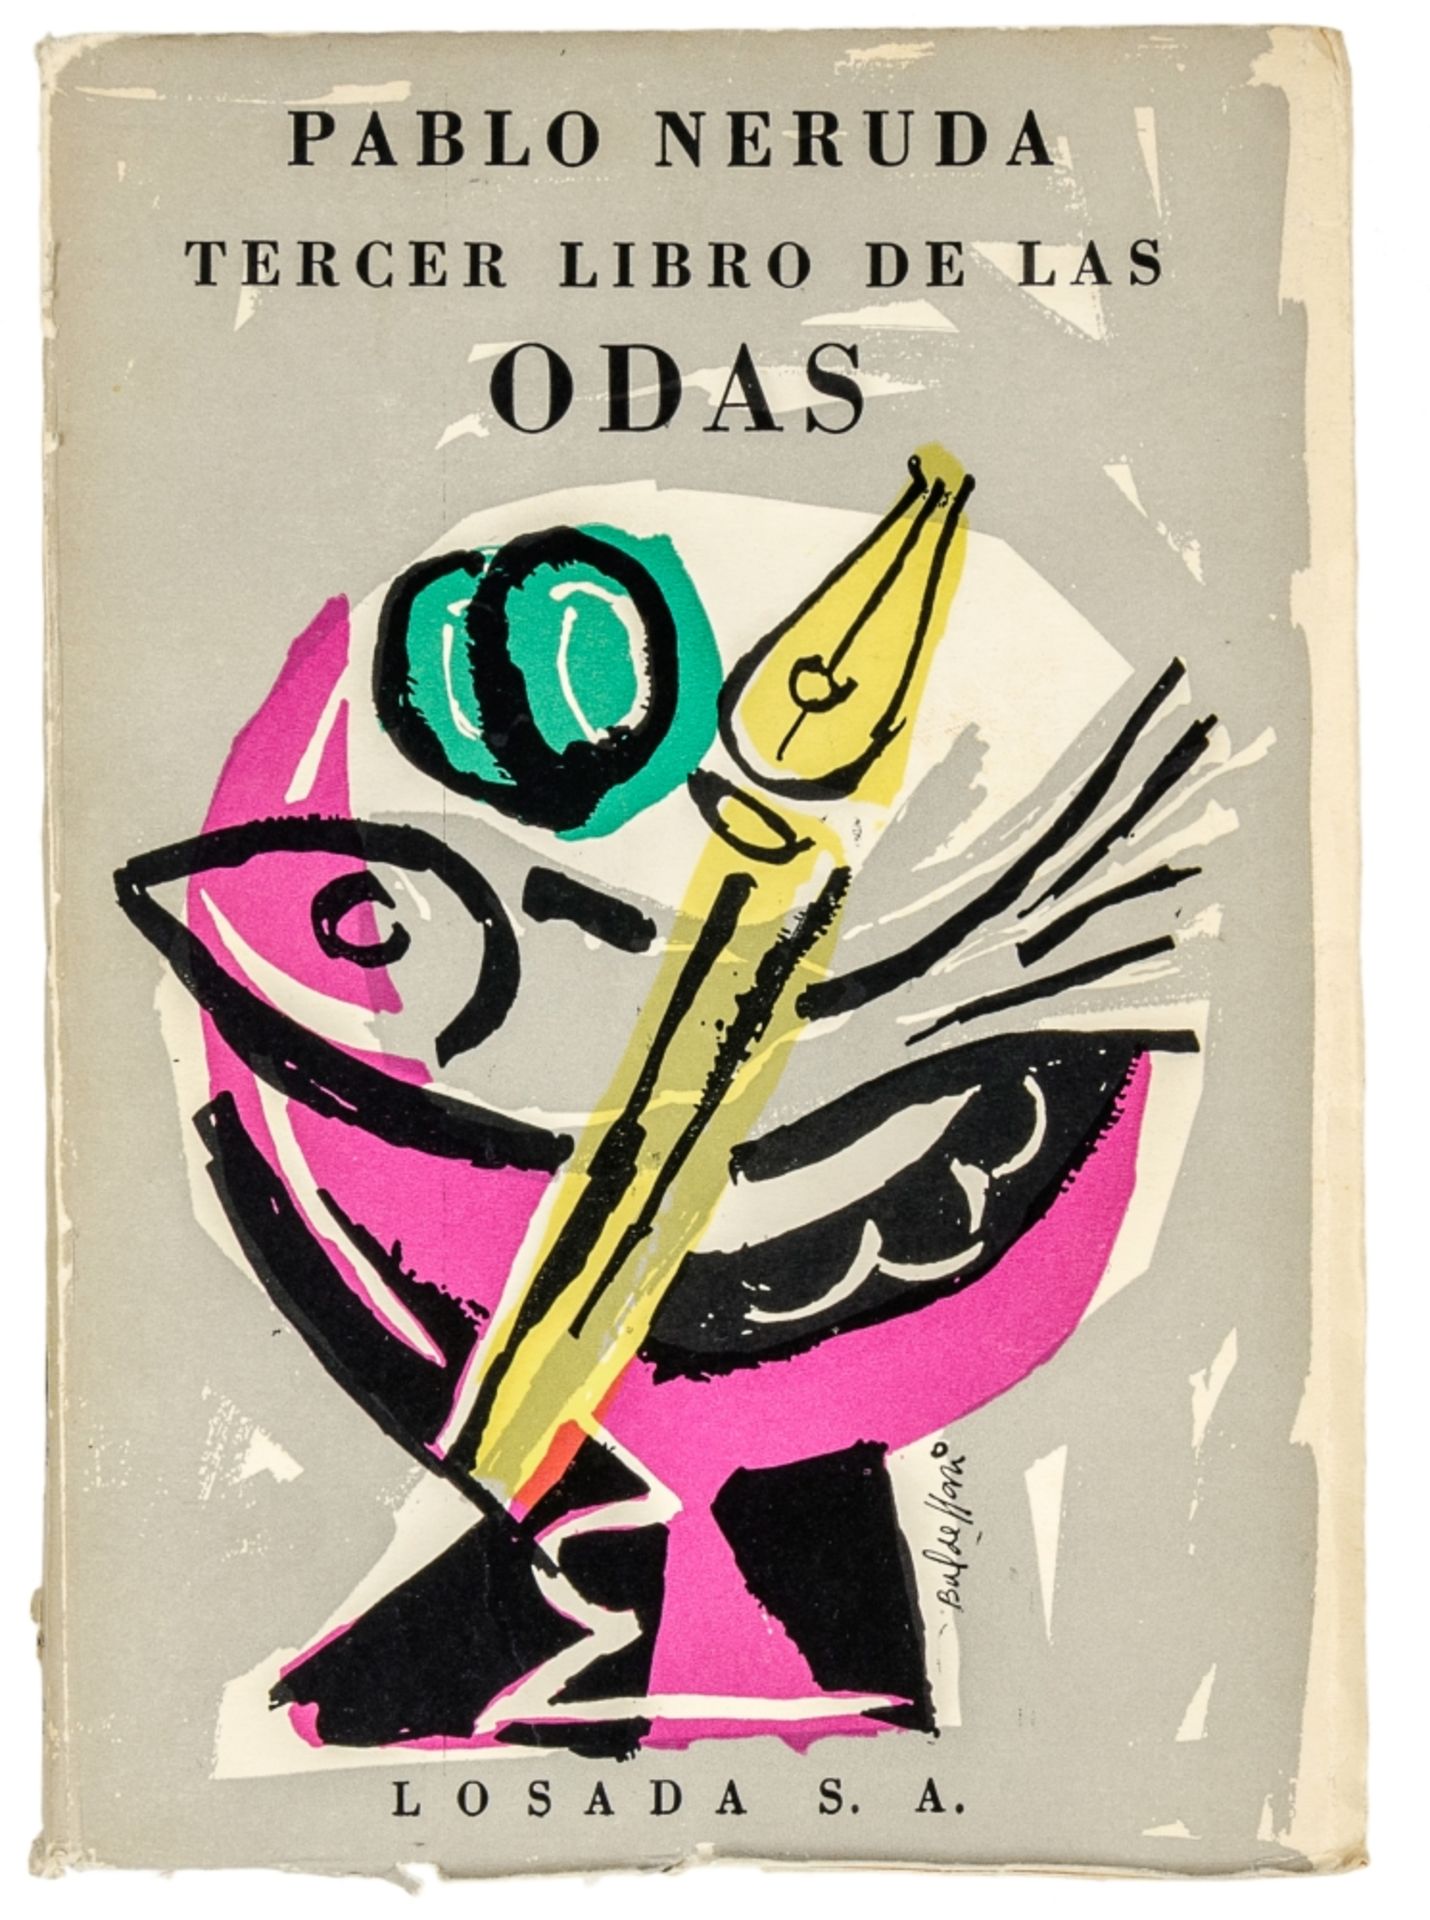 Neruda, Pablo. Tercer libro de las